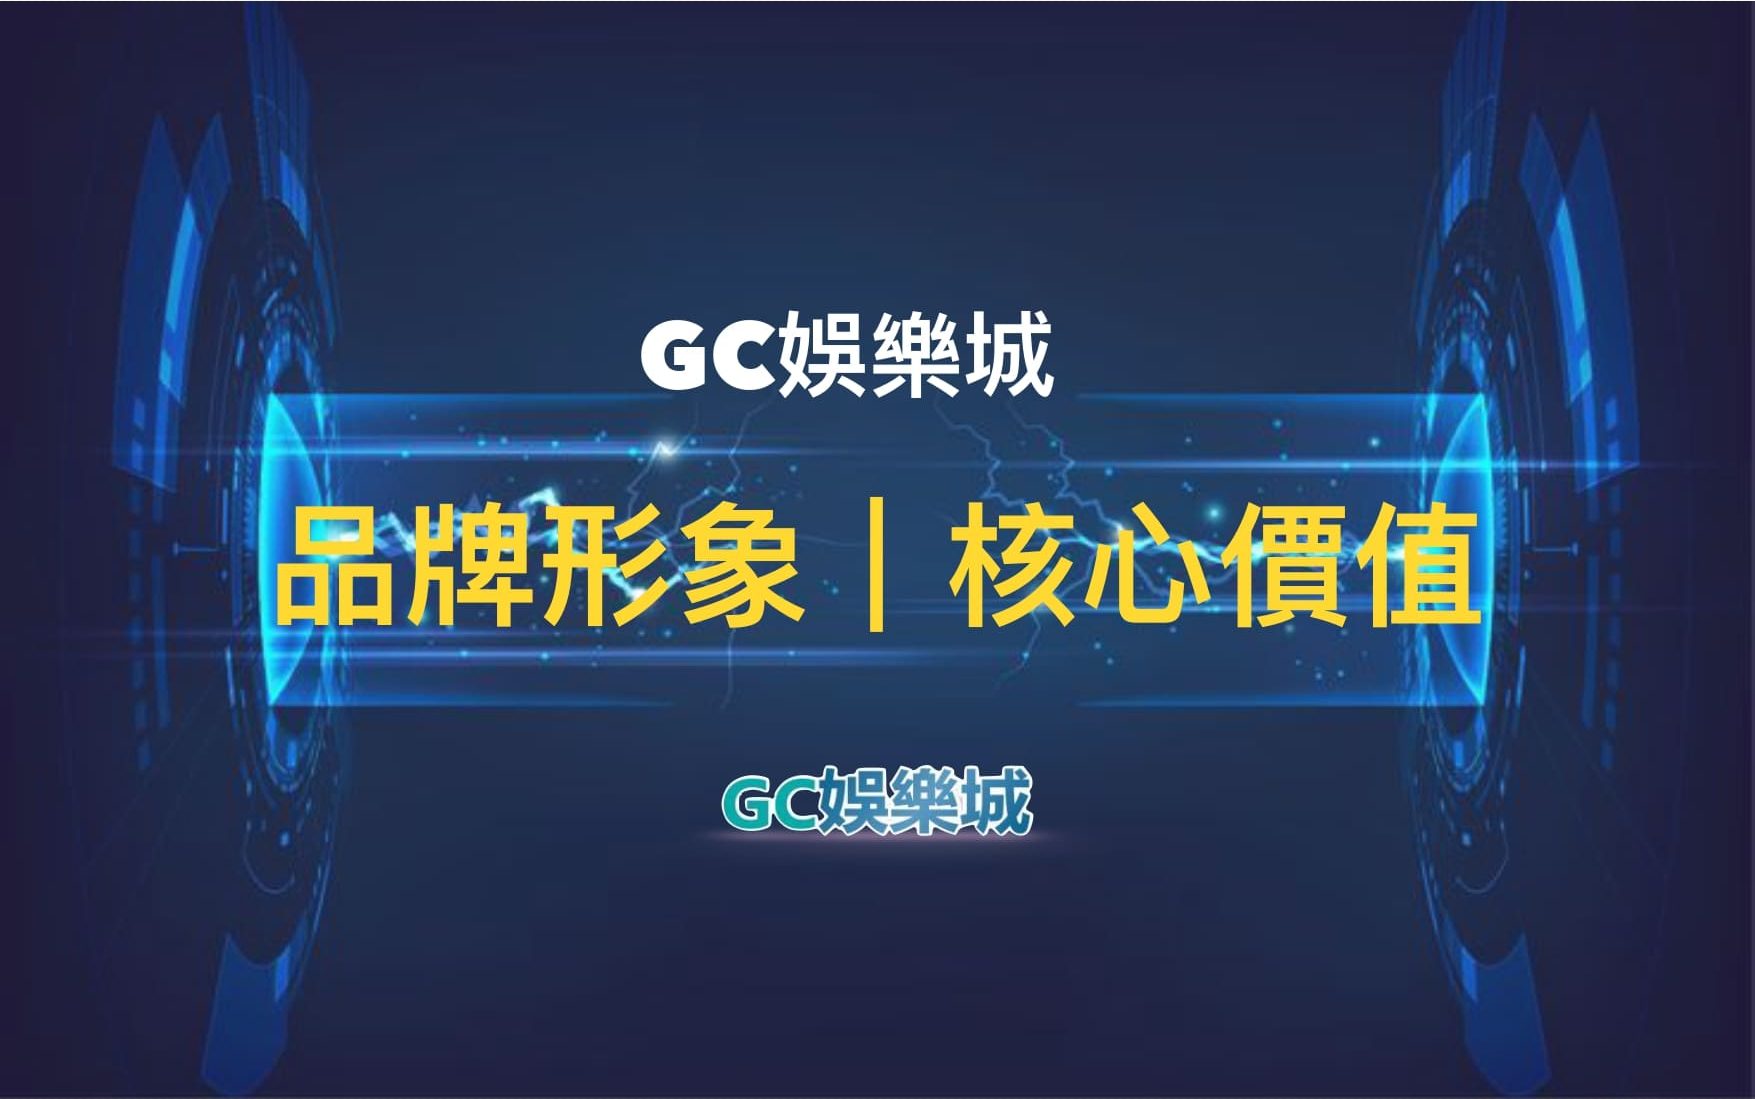 台灣娛樂城《GC娛樂城》形象品牌核心價值